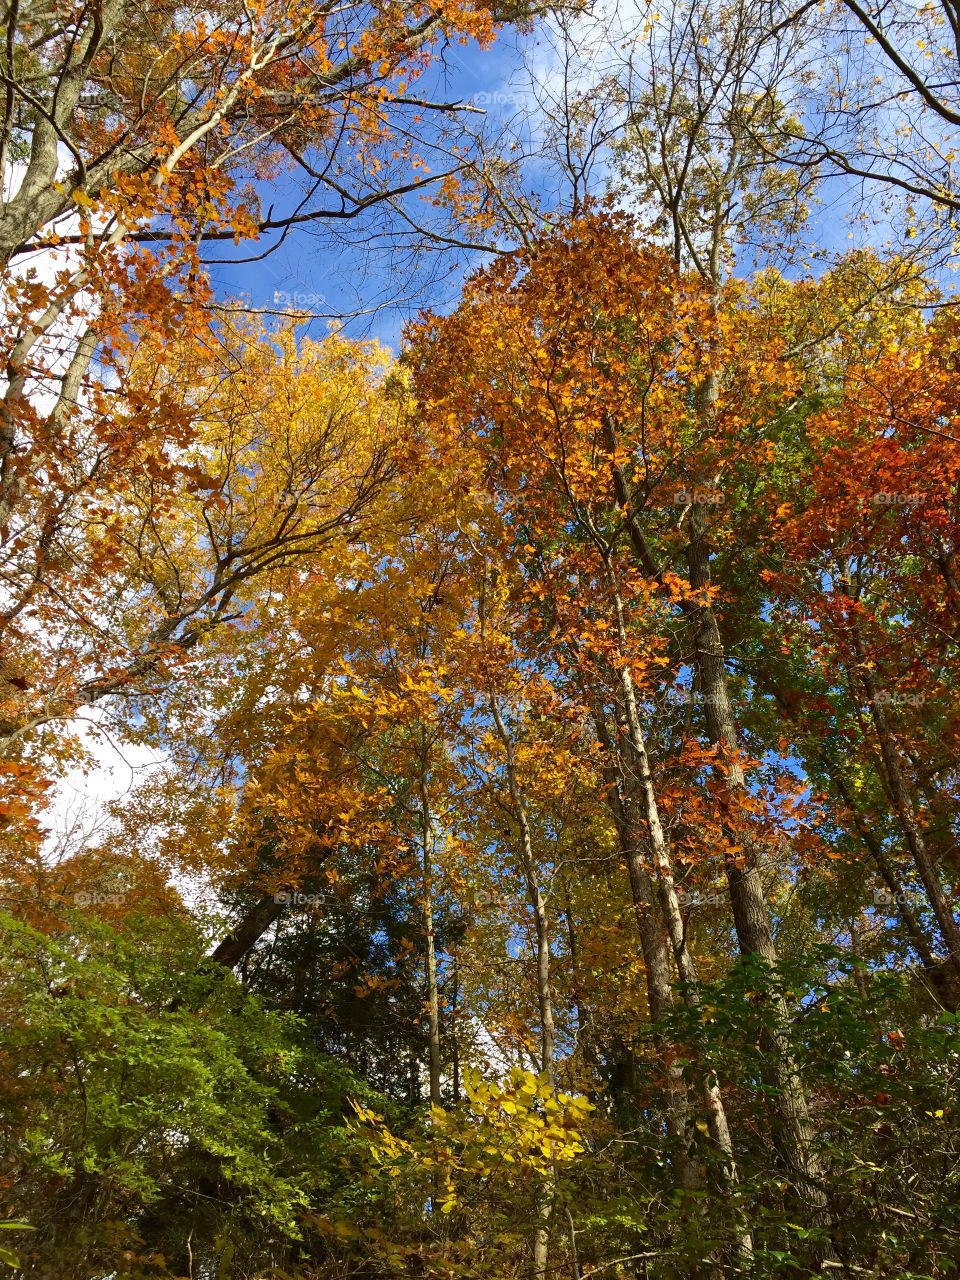 Fall foliage at Kilgore Falls